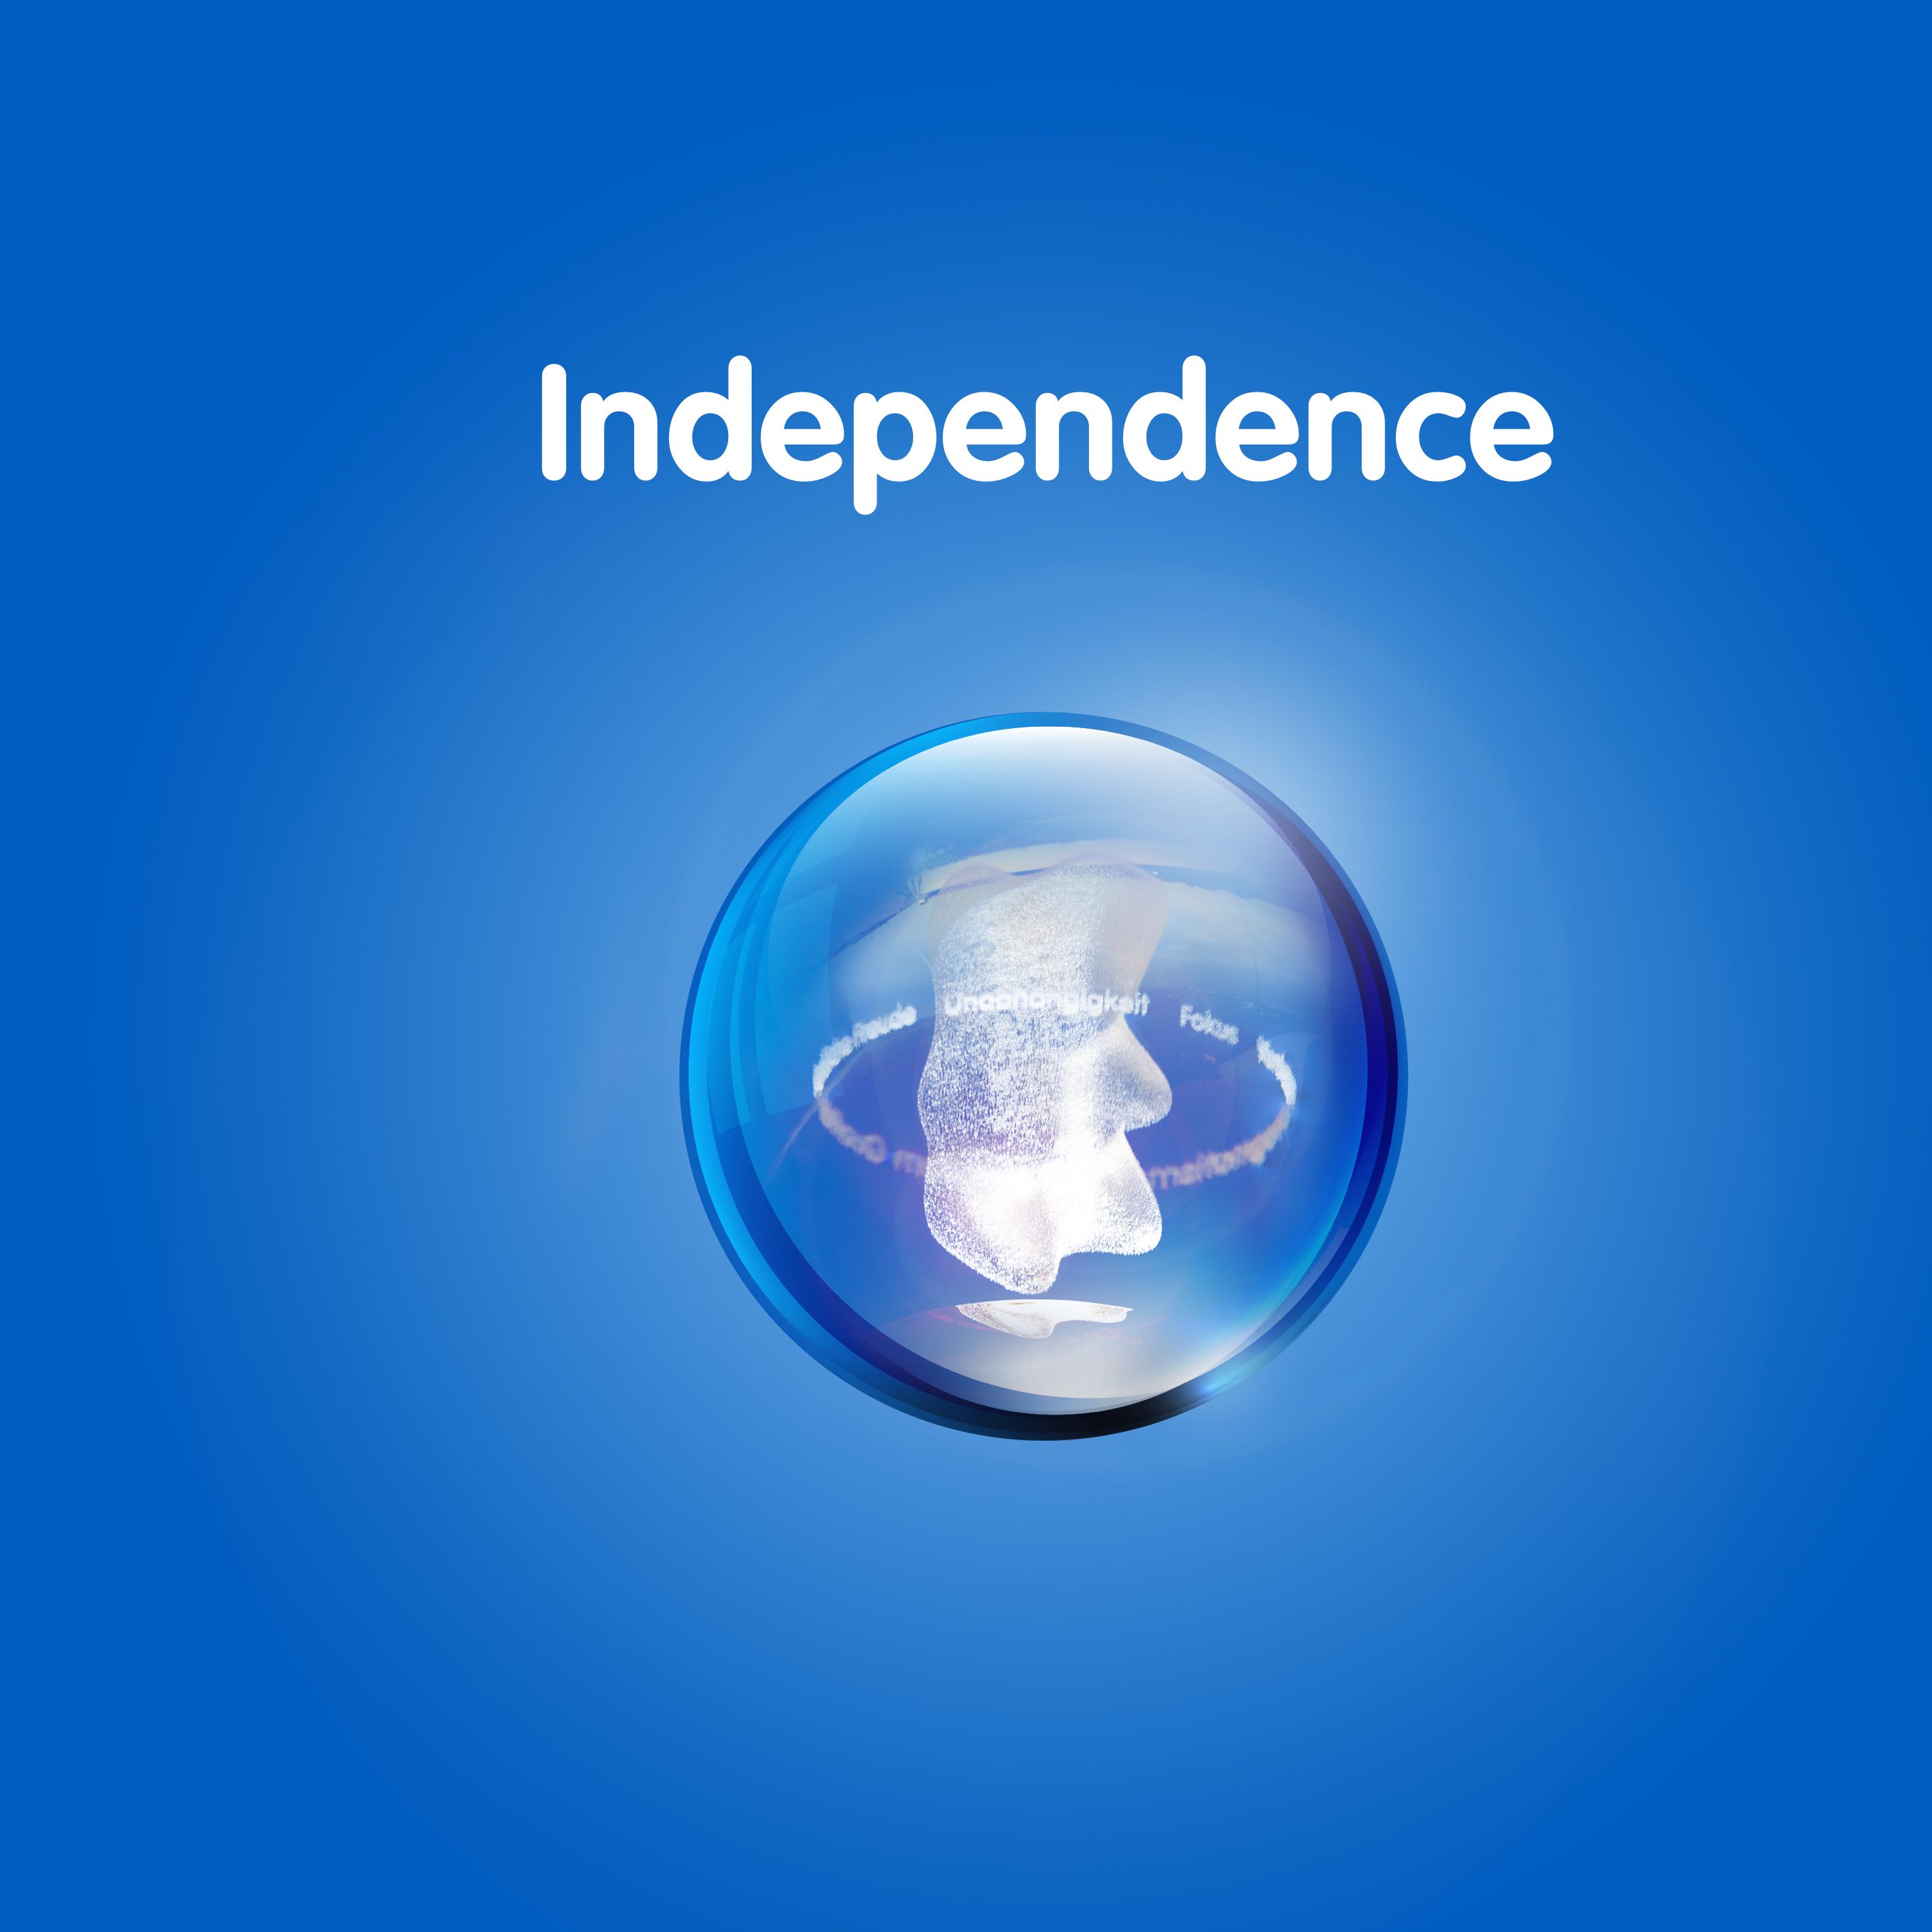 رسم محتو على دب ذهبي في كرة شفافة أمام خلفية زرقاء مع النص: "الاستقلالية"